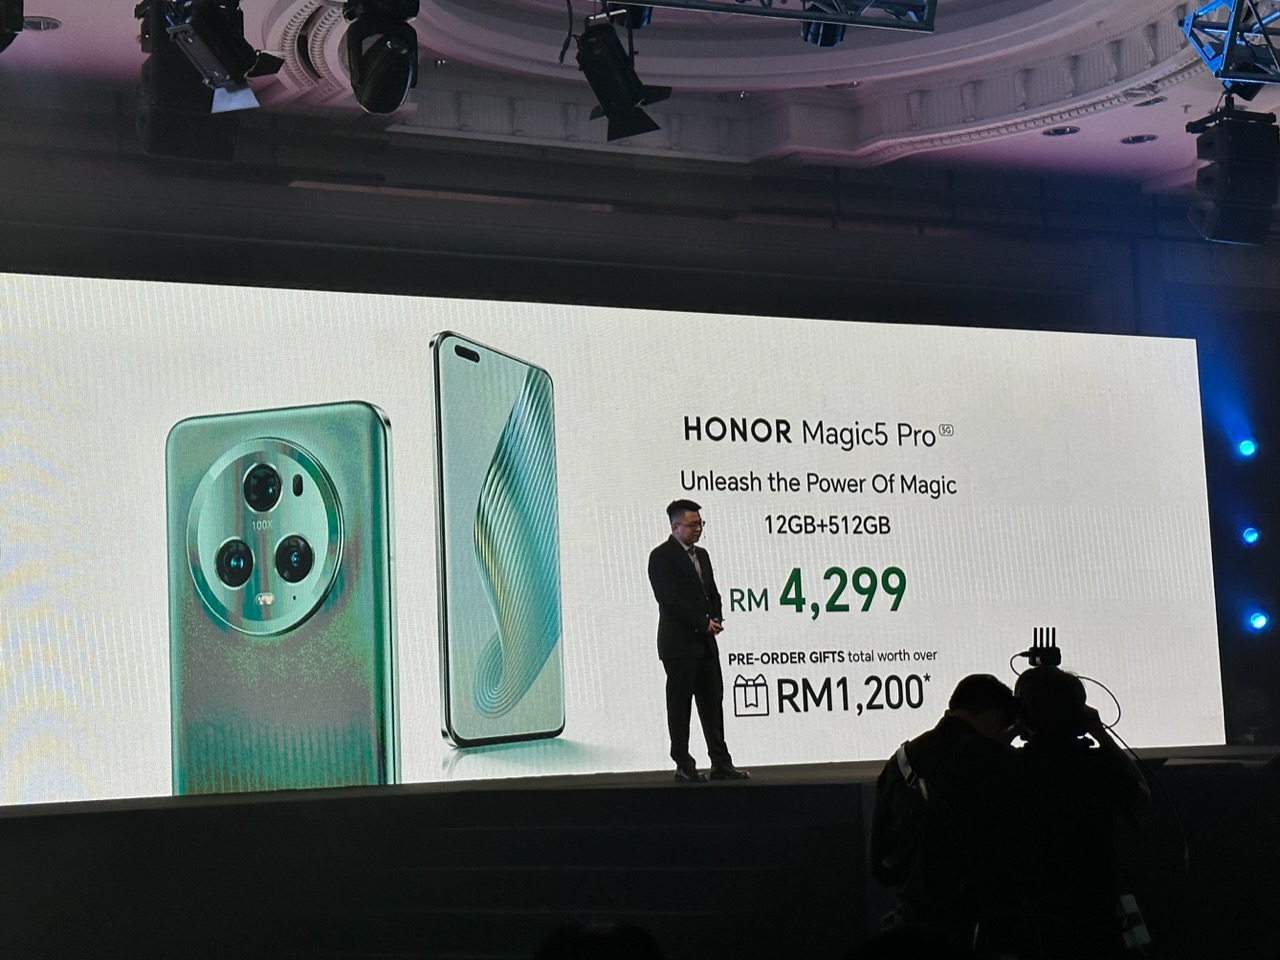 HONOR Magic5 Pro kini rasmi di Malaysia - harga RM 4,299 15